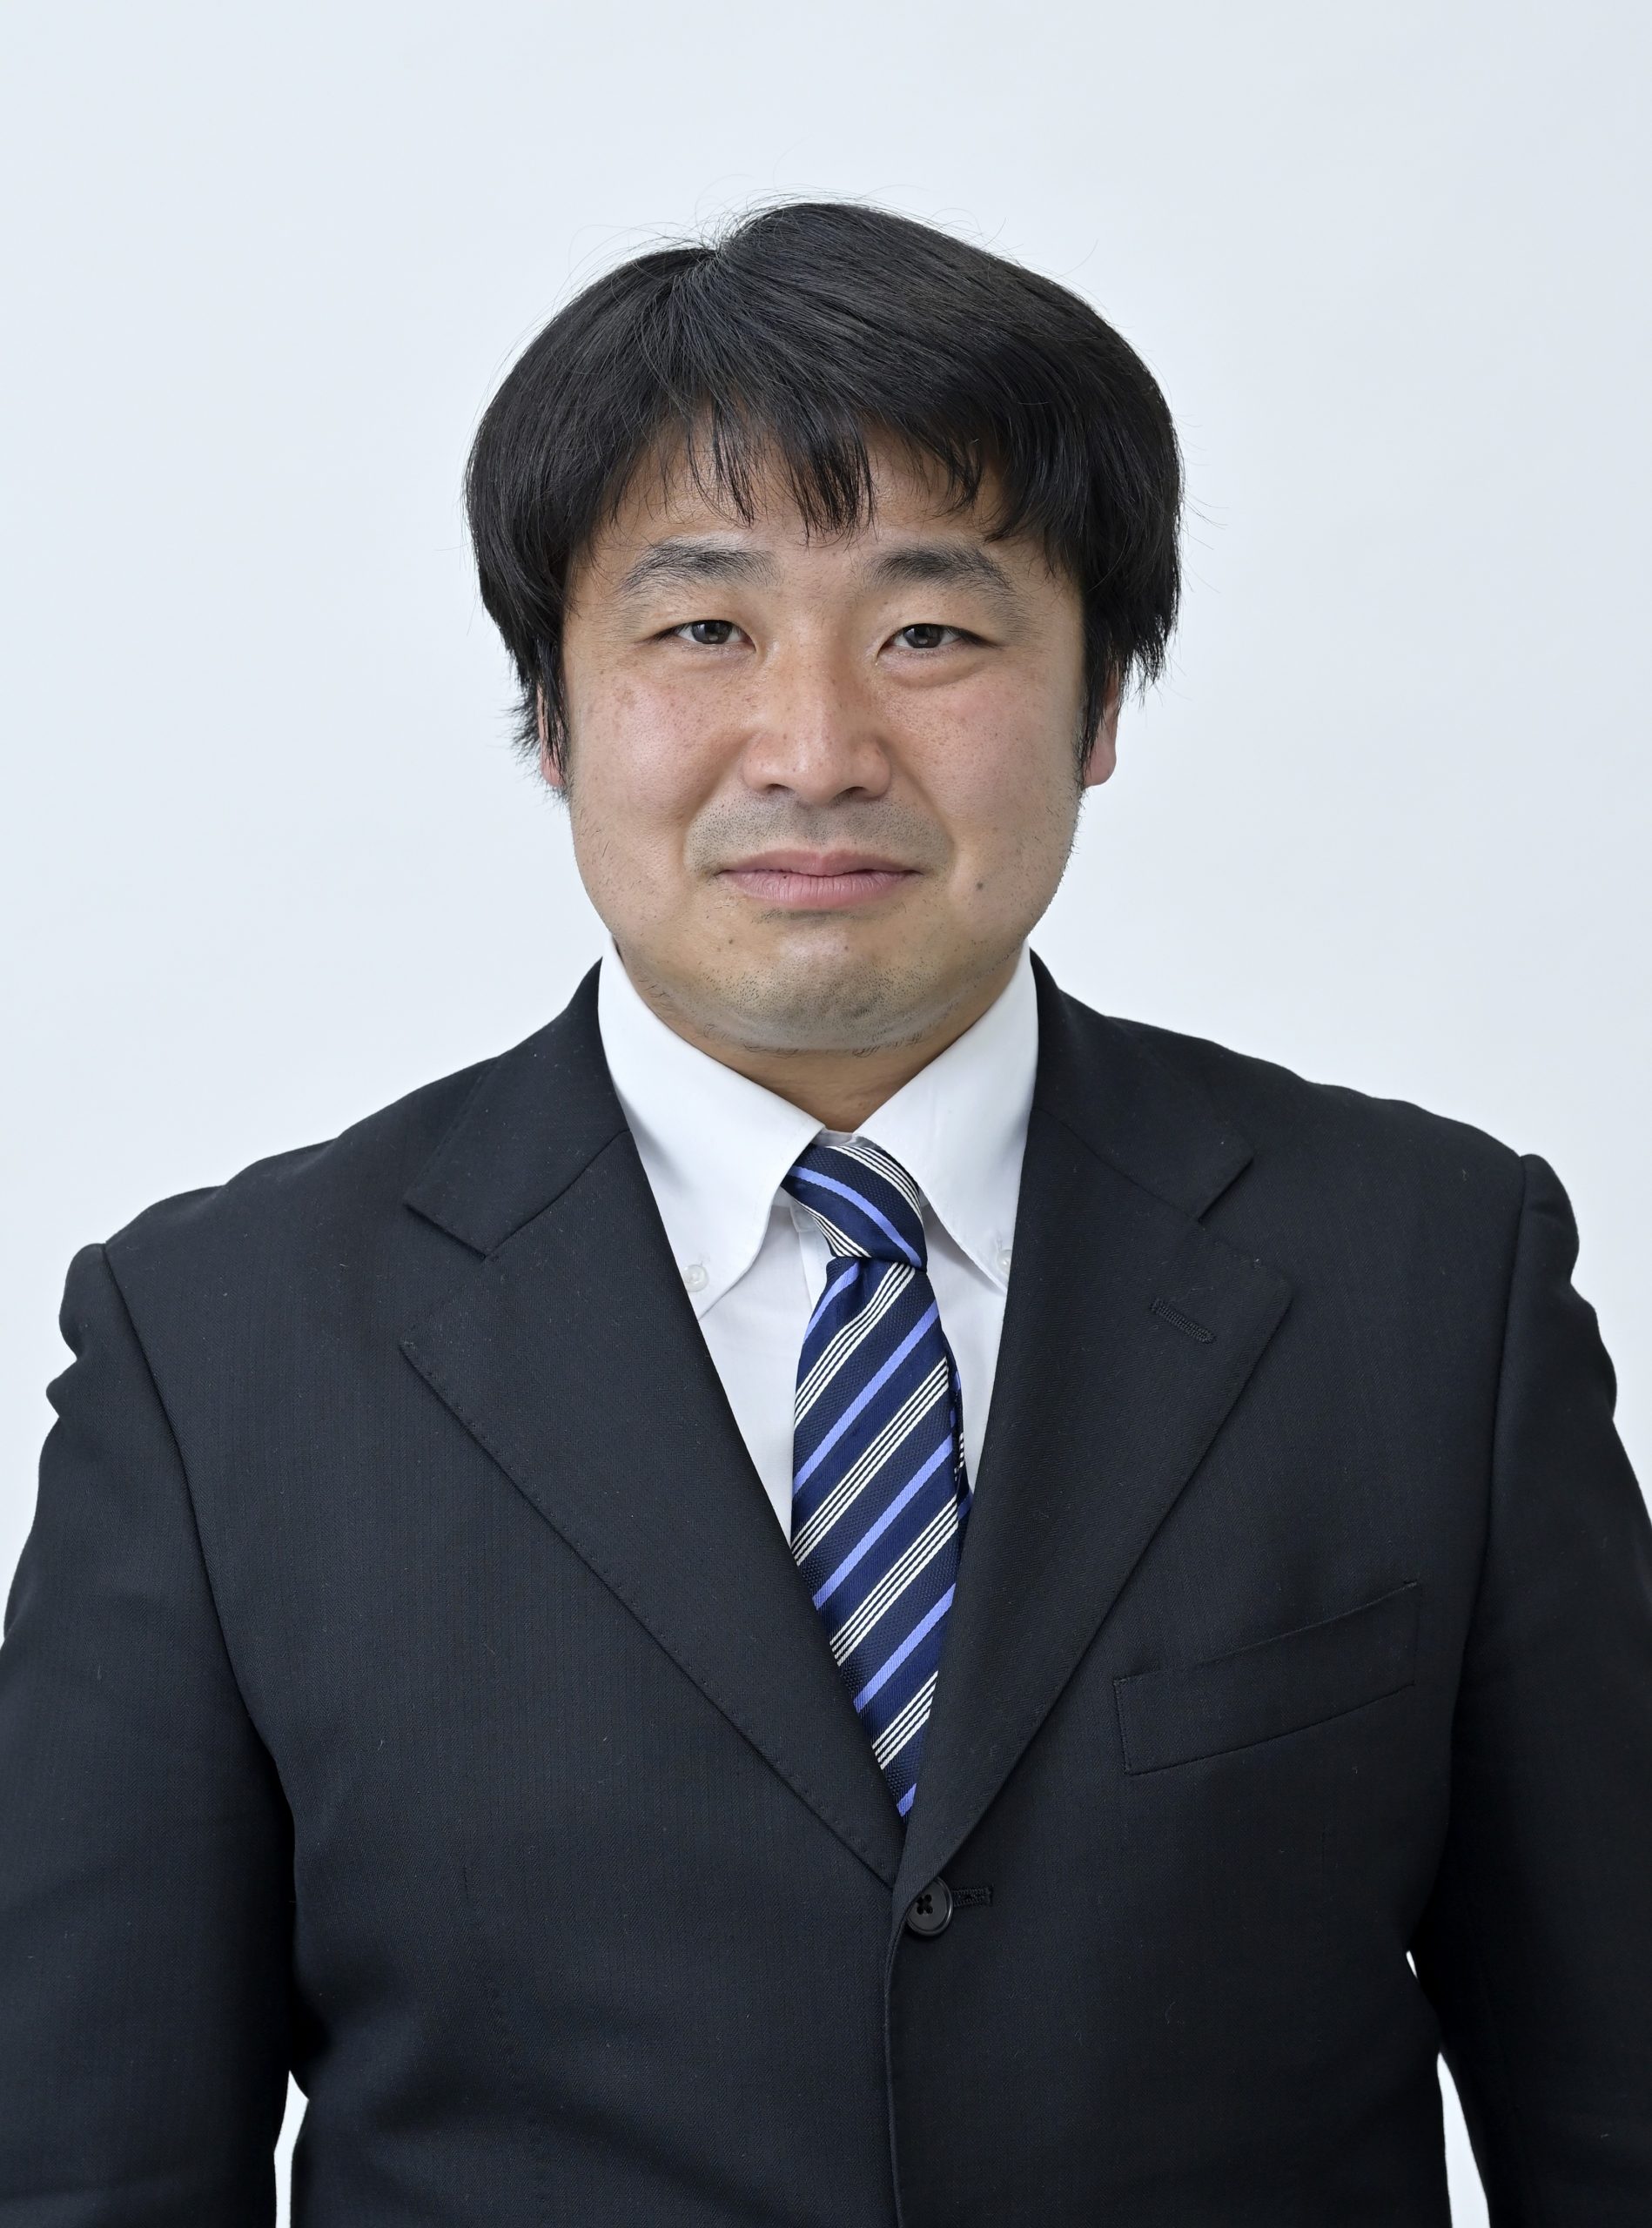 日本大学生産工学部 電気電子工学科 准教授 佐々木 真 教員 sasaki makoto